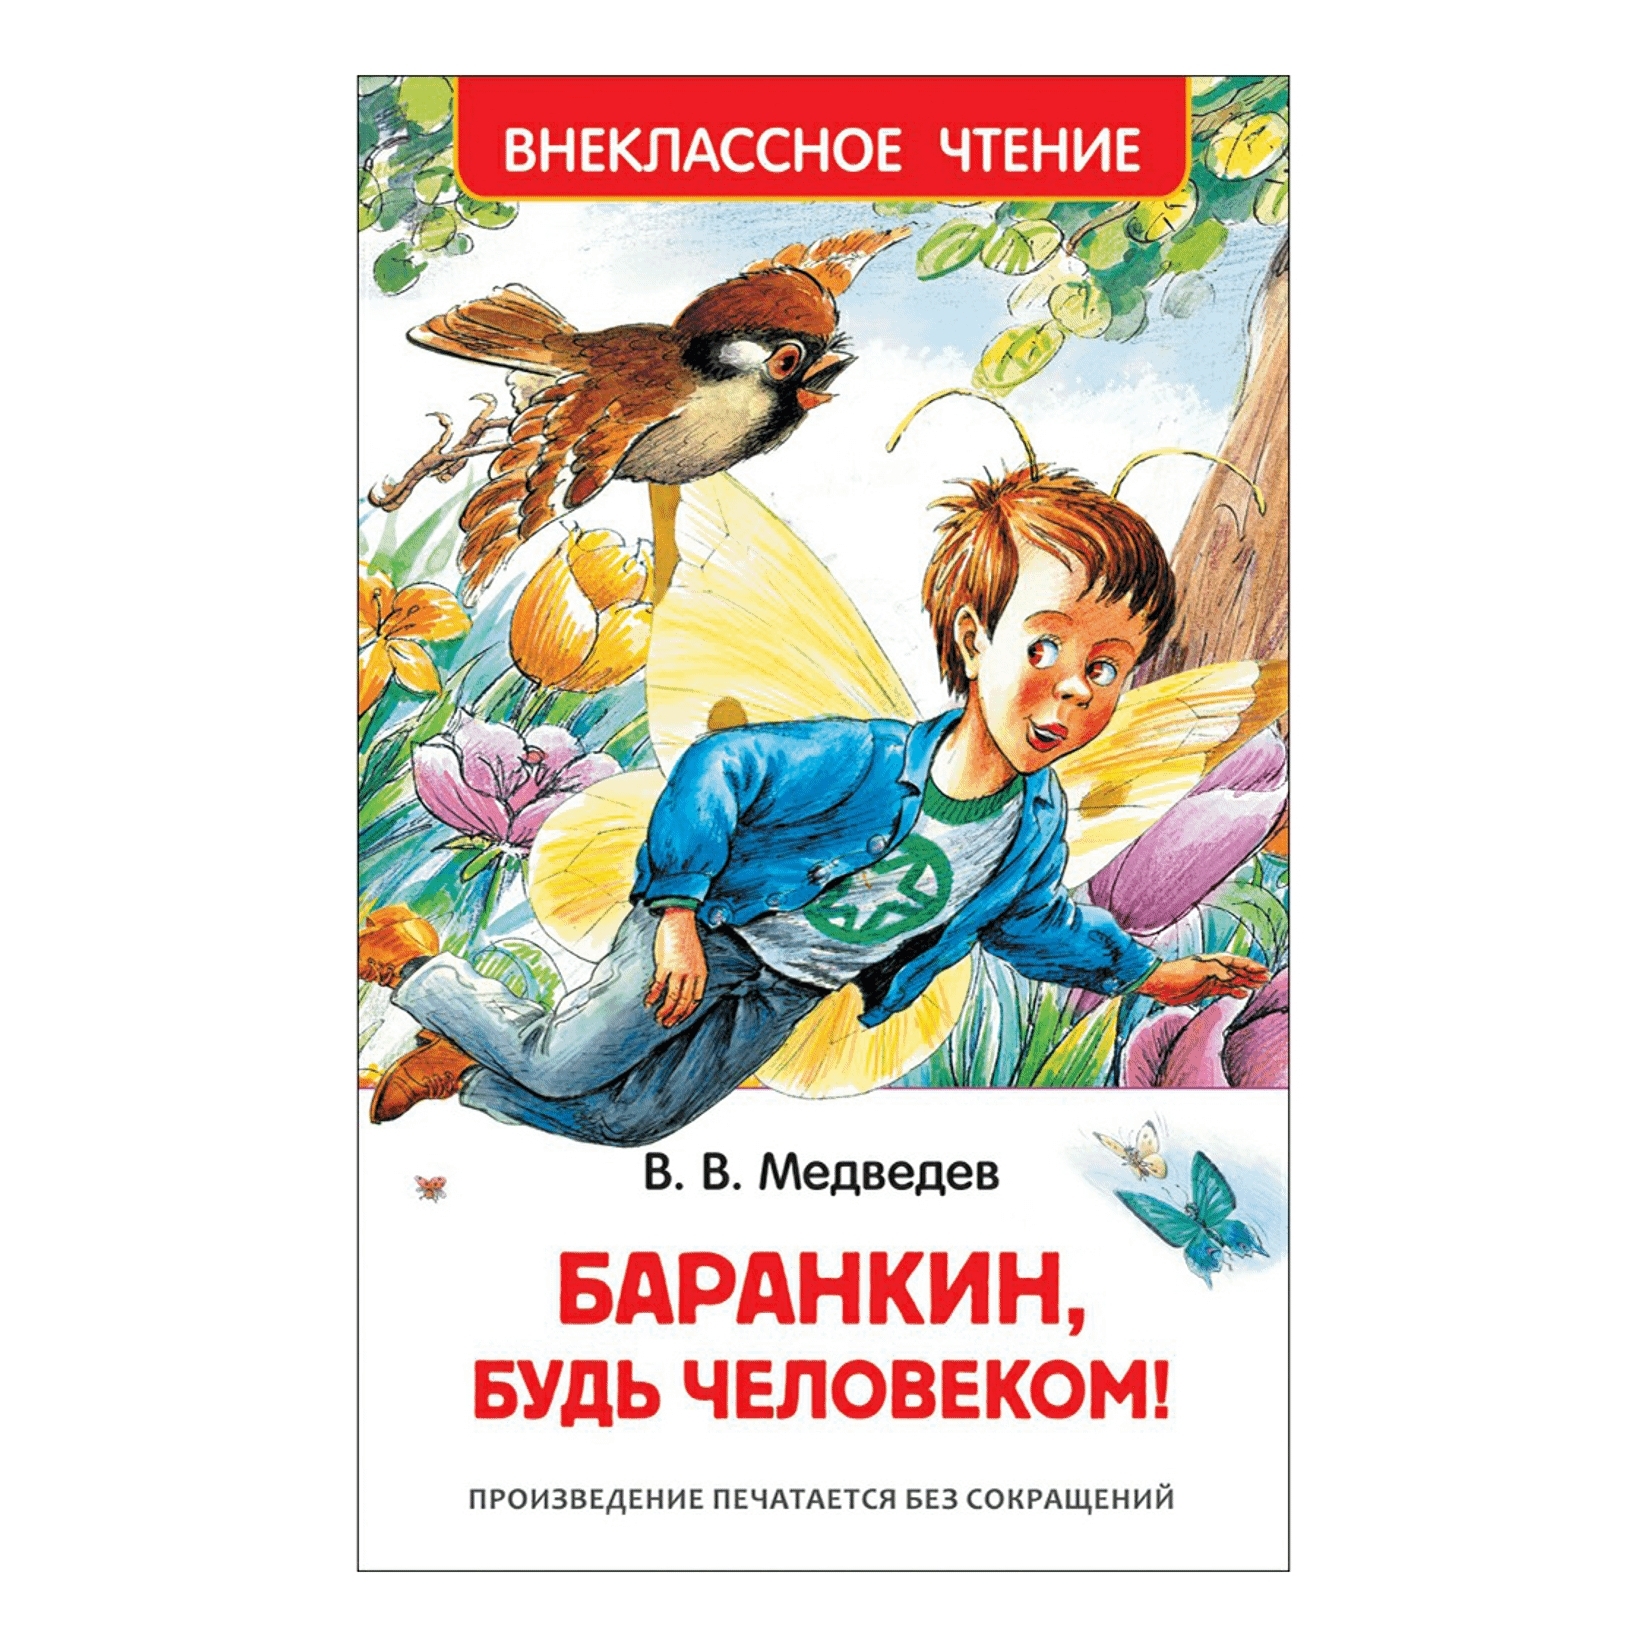 Книга Медведева Баранкин будь человеком. Медведев Баранкин будь человеком обложка. Краткое содержание баранкин будь